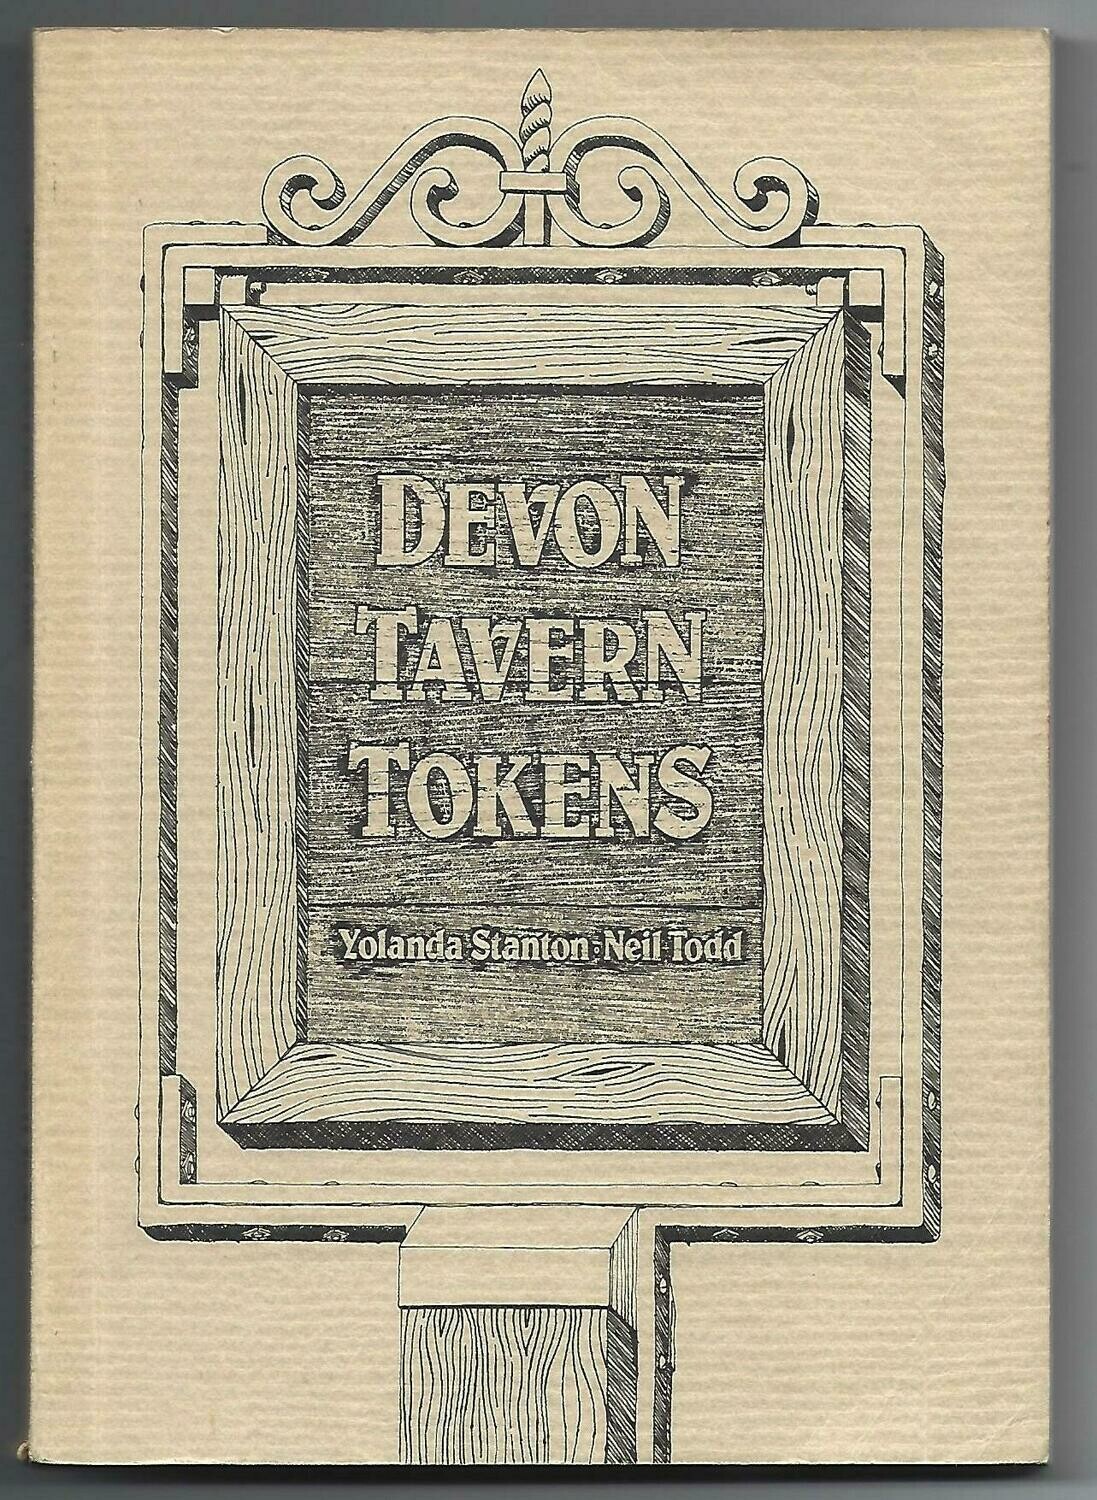 British; Yolanda Stanton & Neil Todd, "Devon Tavern Tokens."